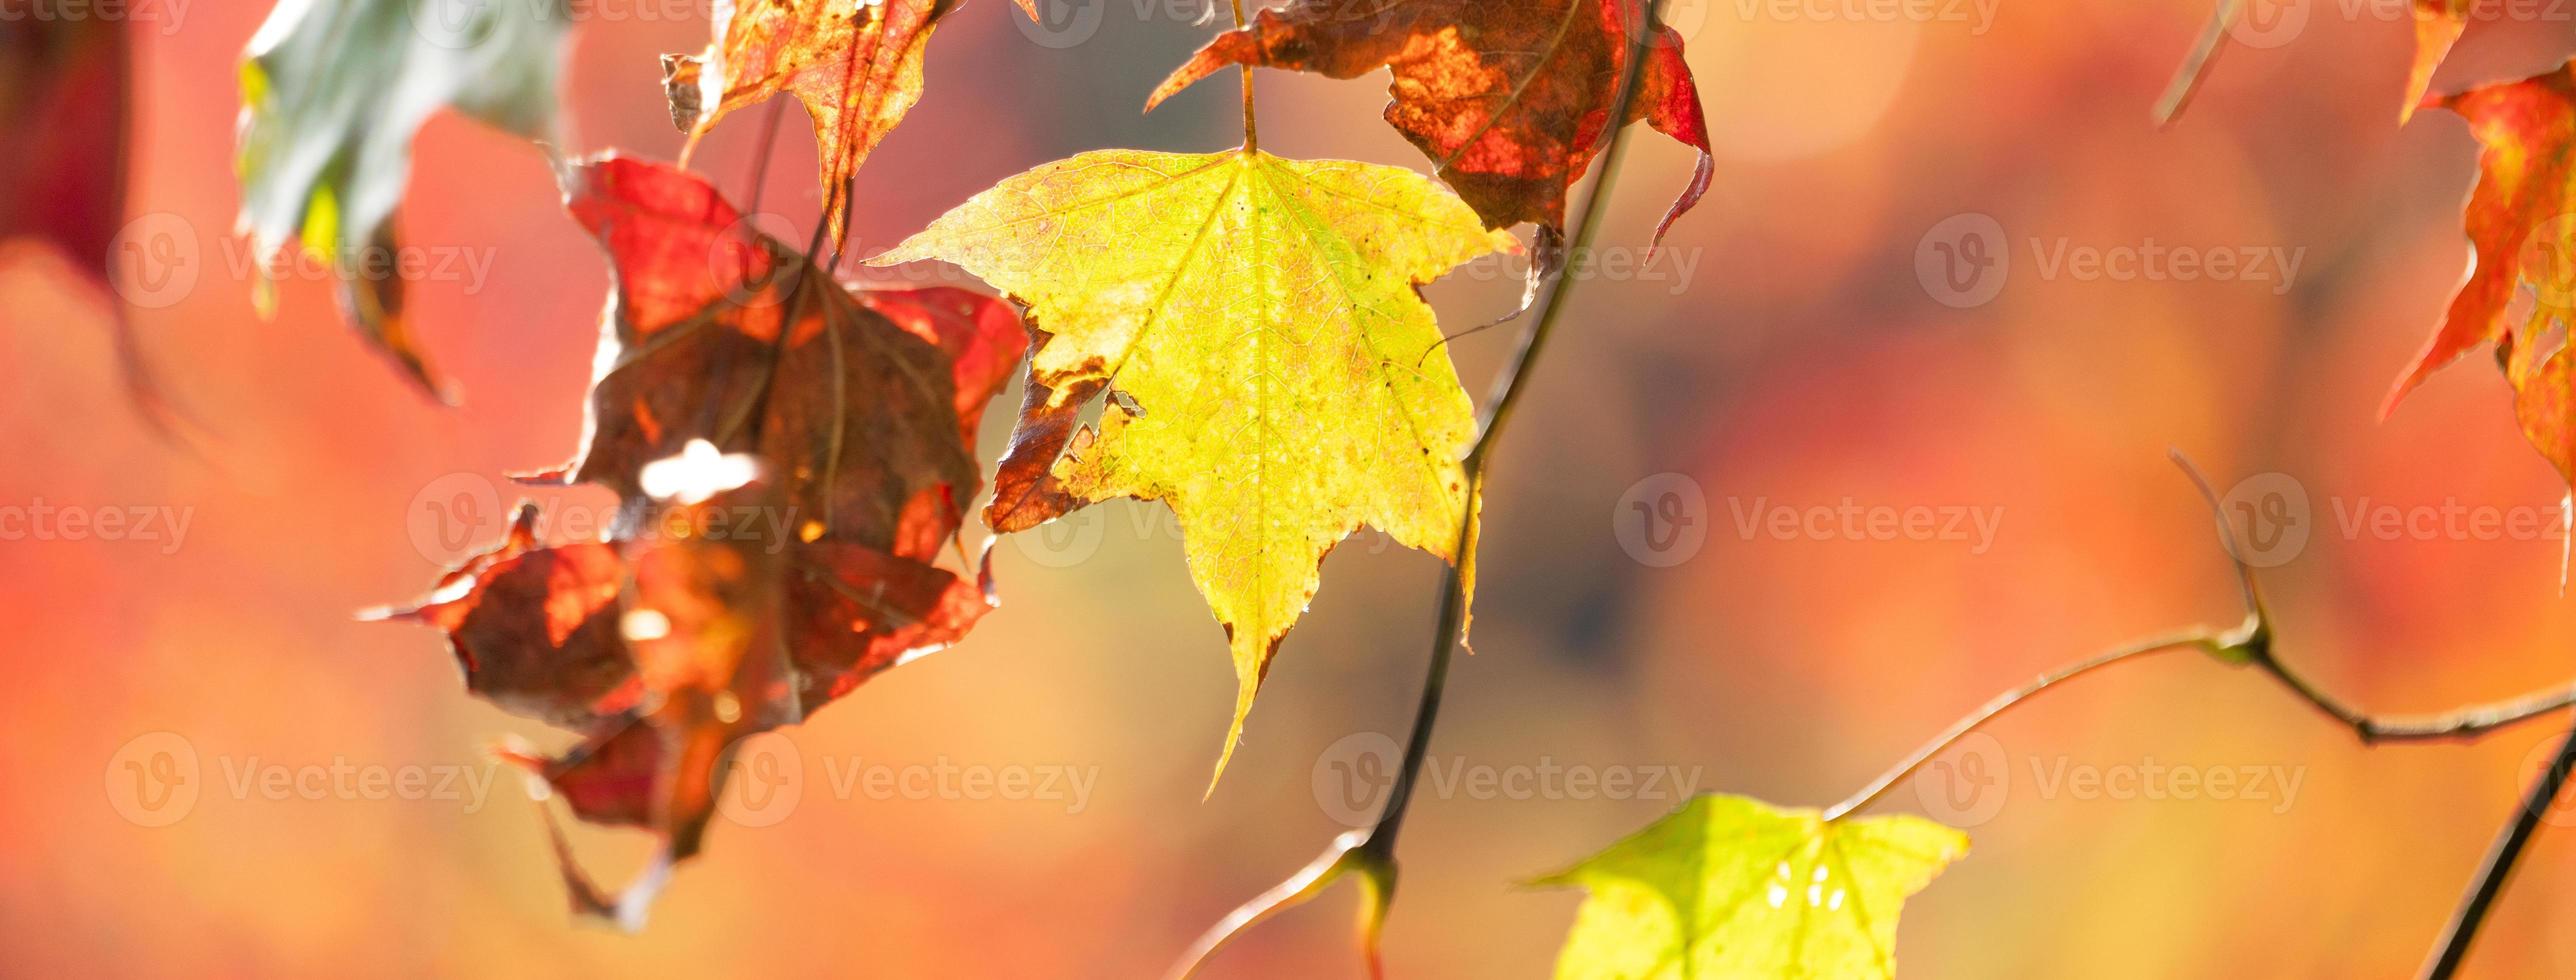 Nahaufnahme von schönen Ahornblättern, die in der Herbstsaison auf verschwommenem Bokeh-Hintergrund isoliert sind. foto